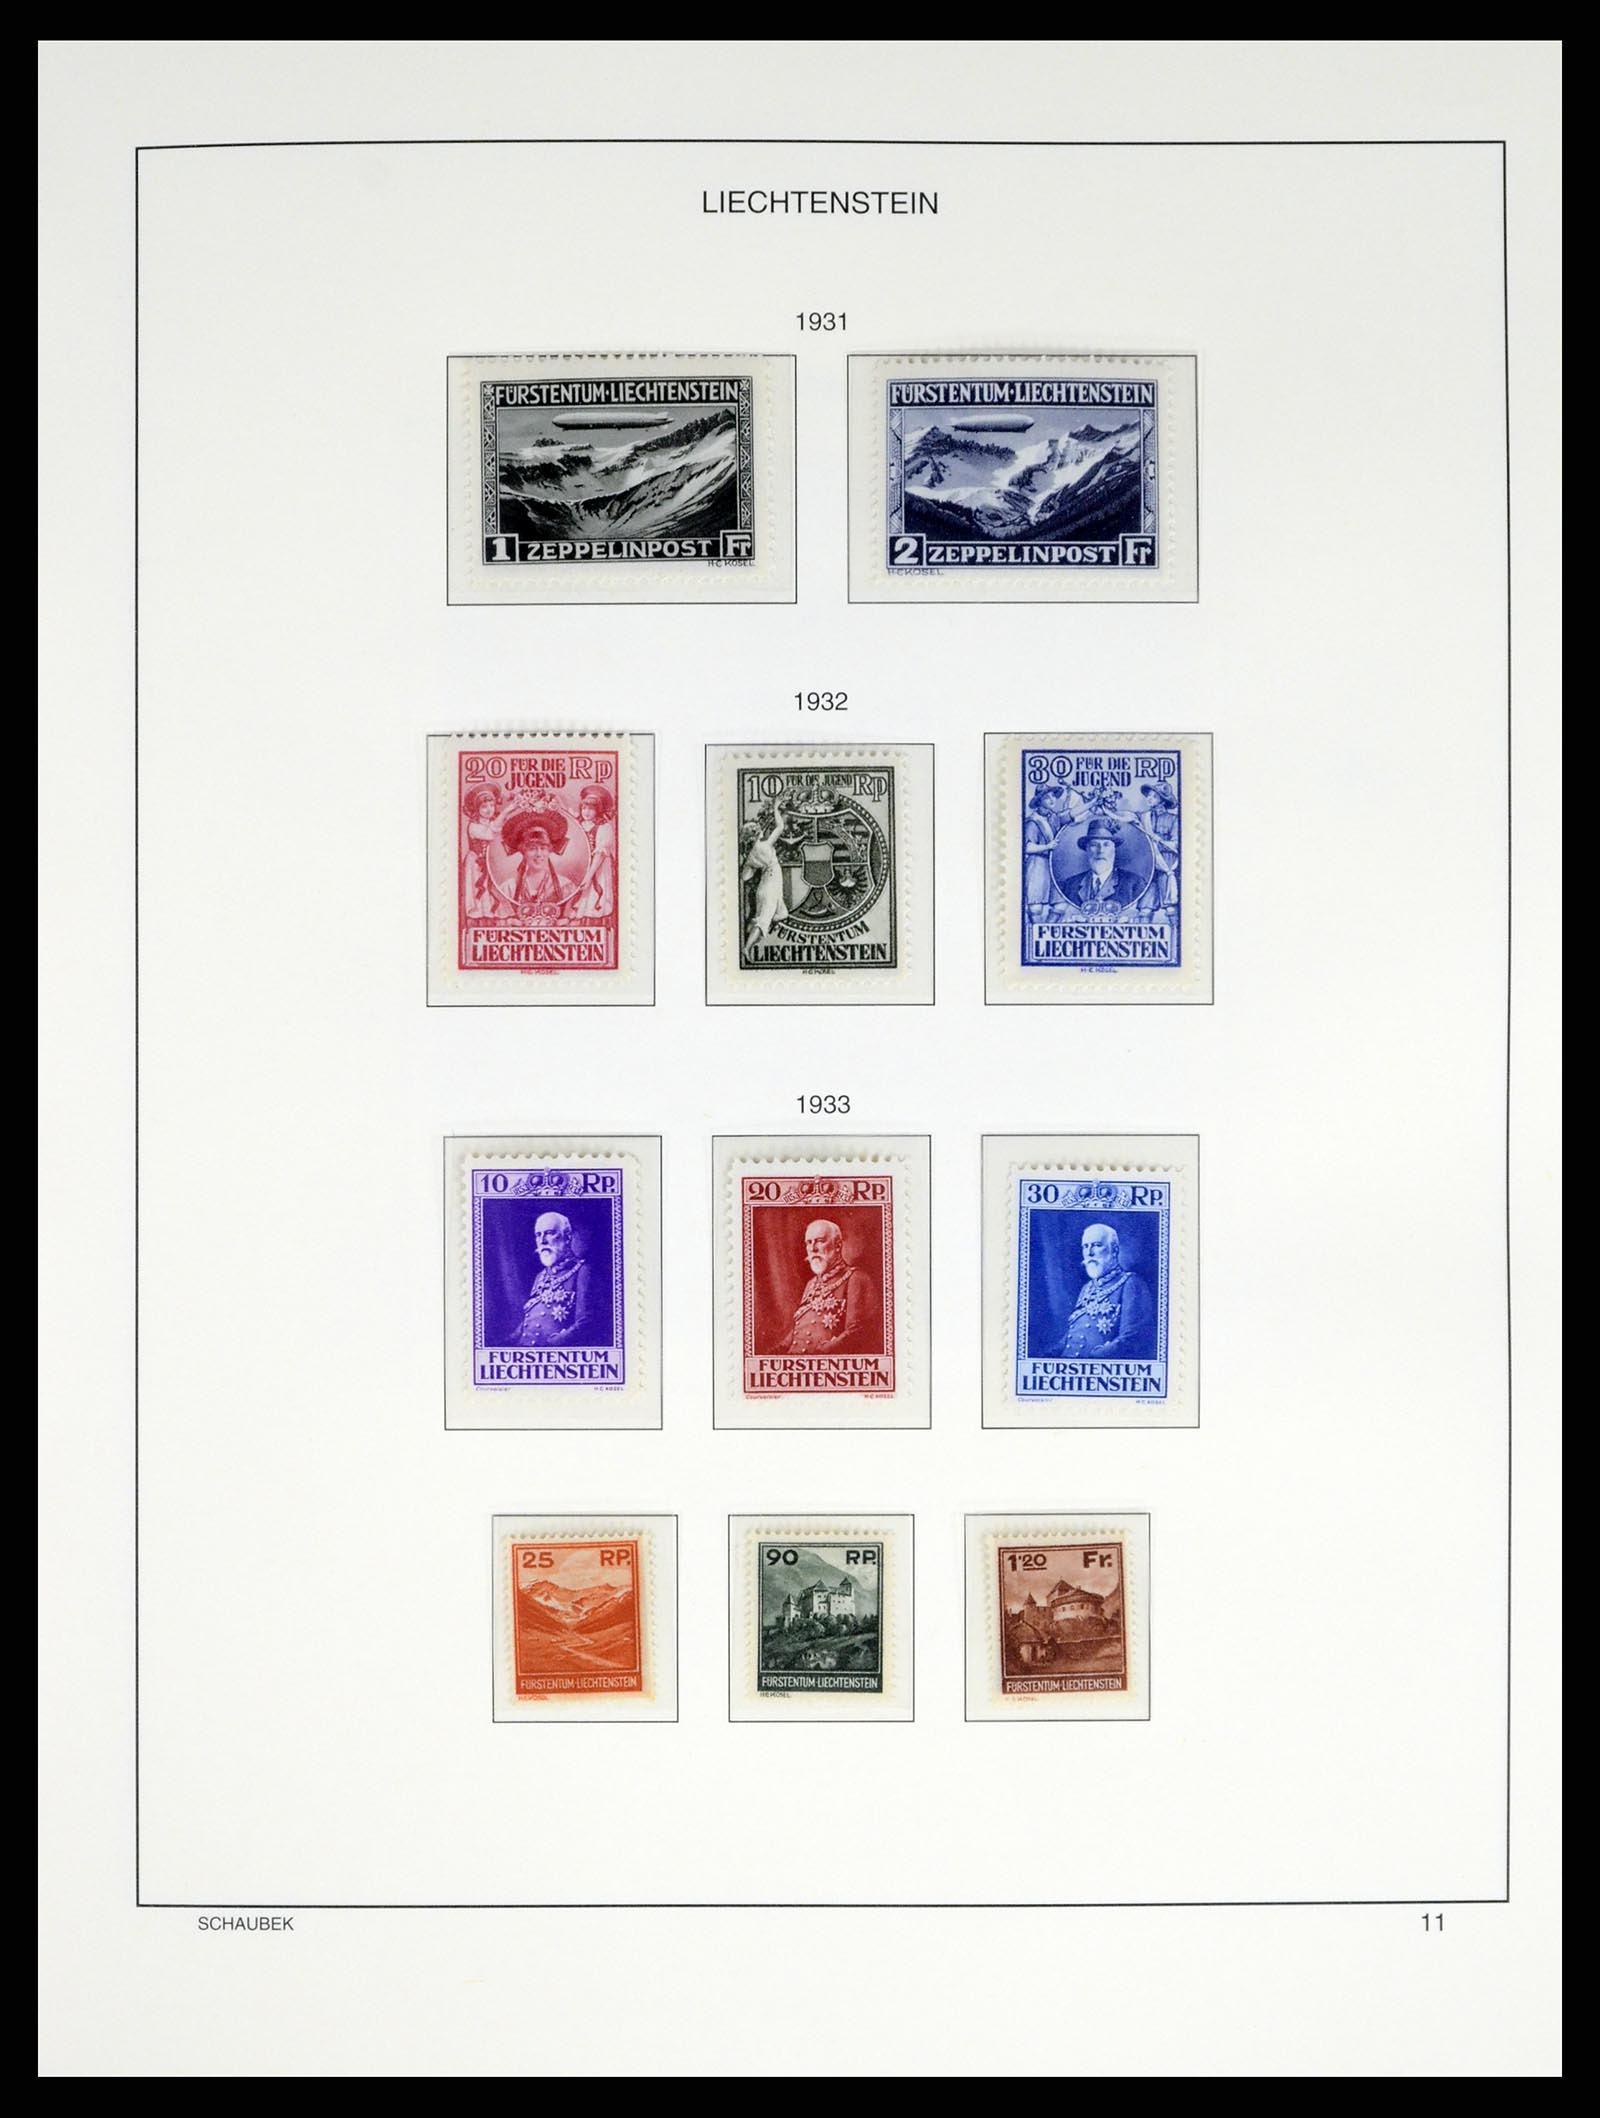 37547 011 - Stamp collection 37547 Liechtenstein 1912-2011.